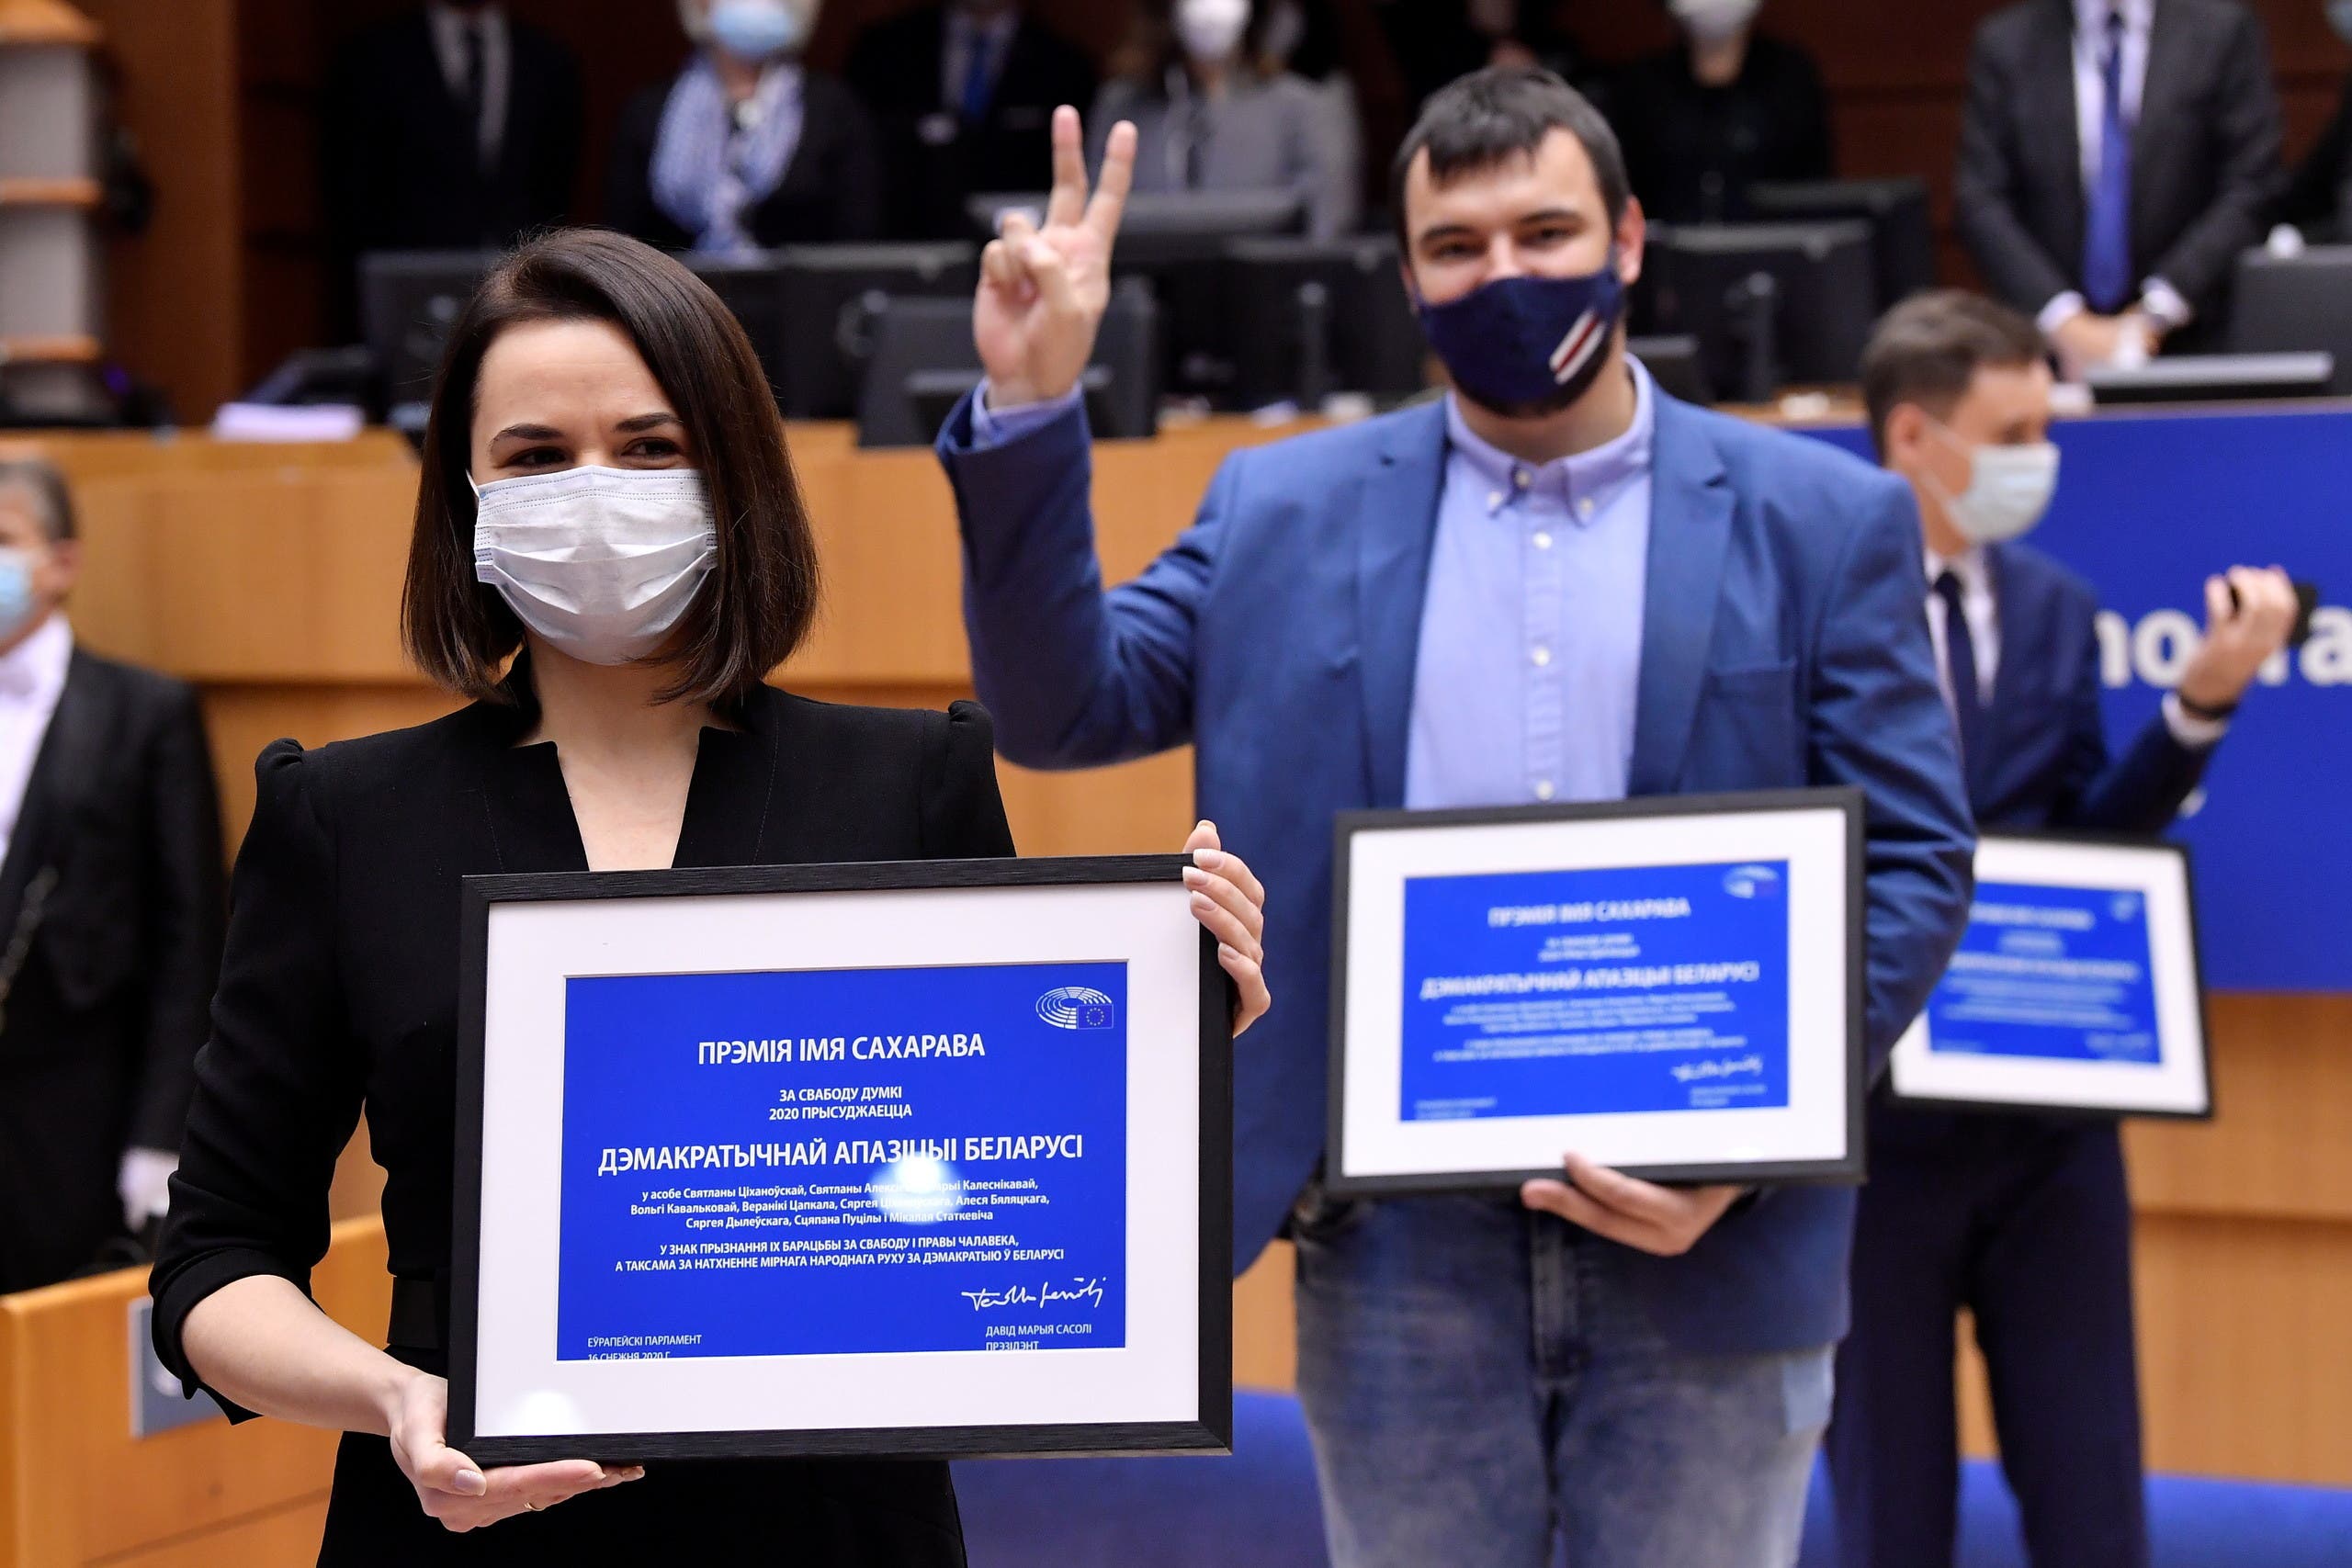 منح معارضة بيلاروسية جائزة ساخاروف في البرلمان الأوروبيا العام الماضي 